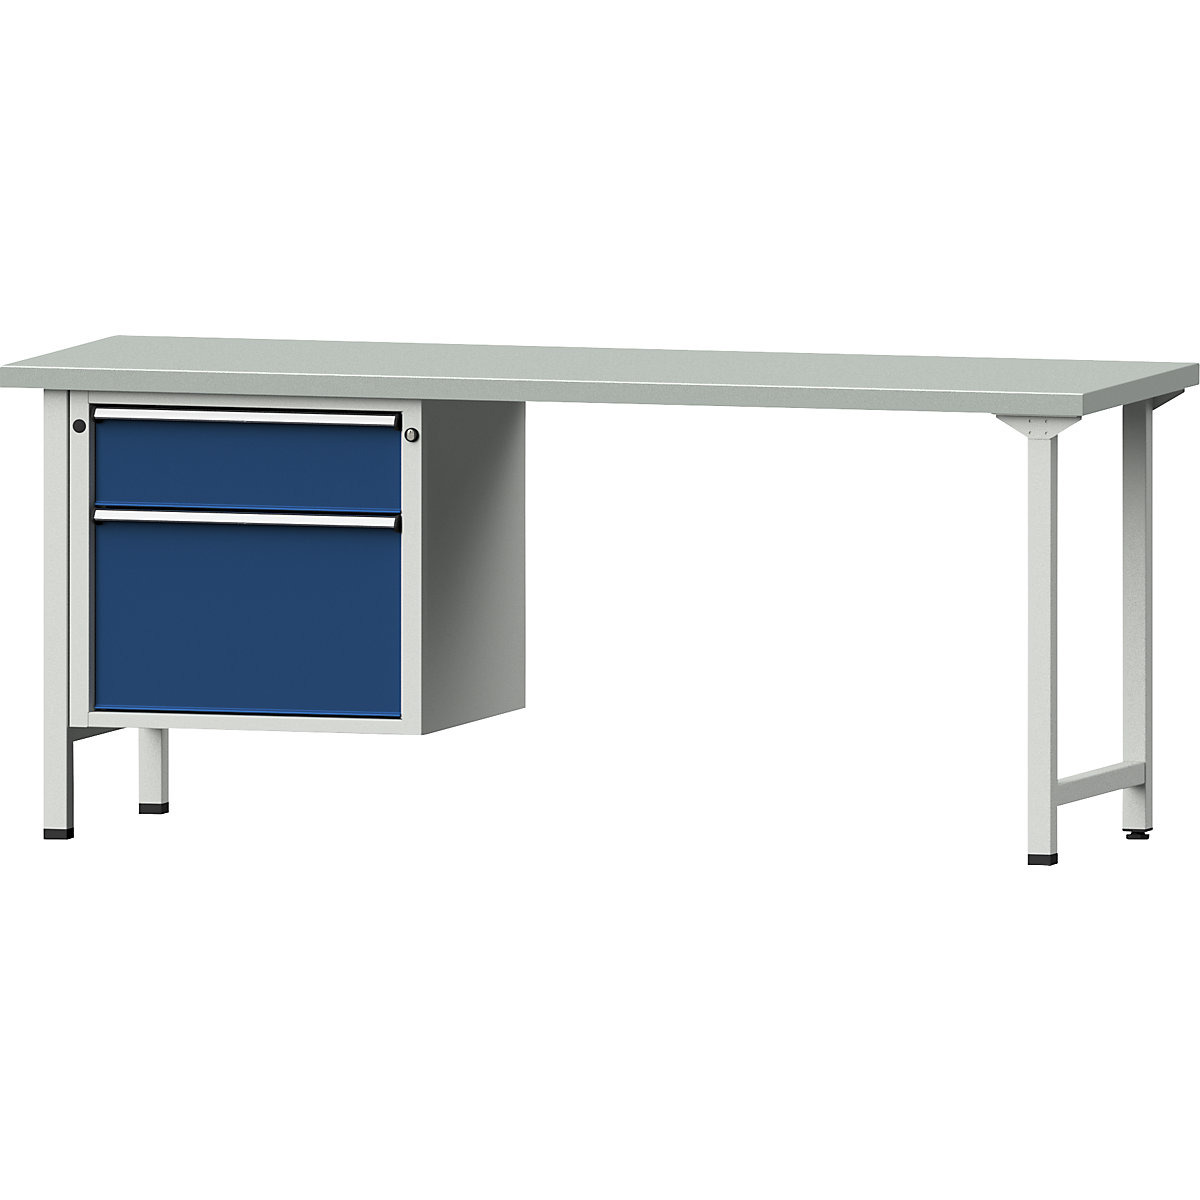 Dílenský stůl s rámovou konstrukcí – ANKE, 2 zásuvky, deska s potahem z ocelového plechu, šířka 2000 mm-8